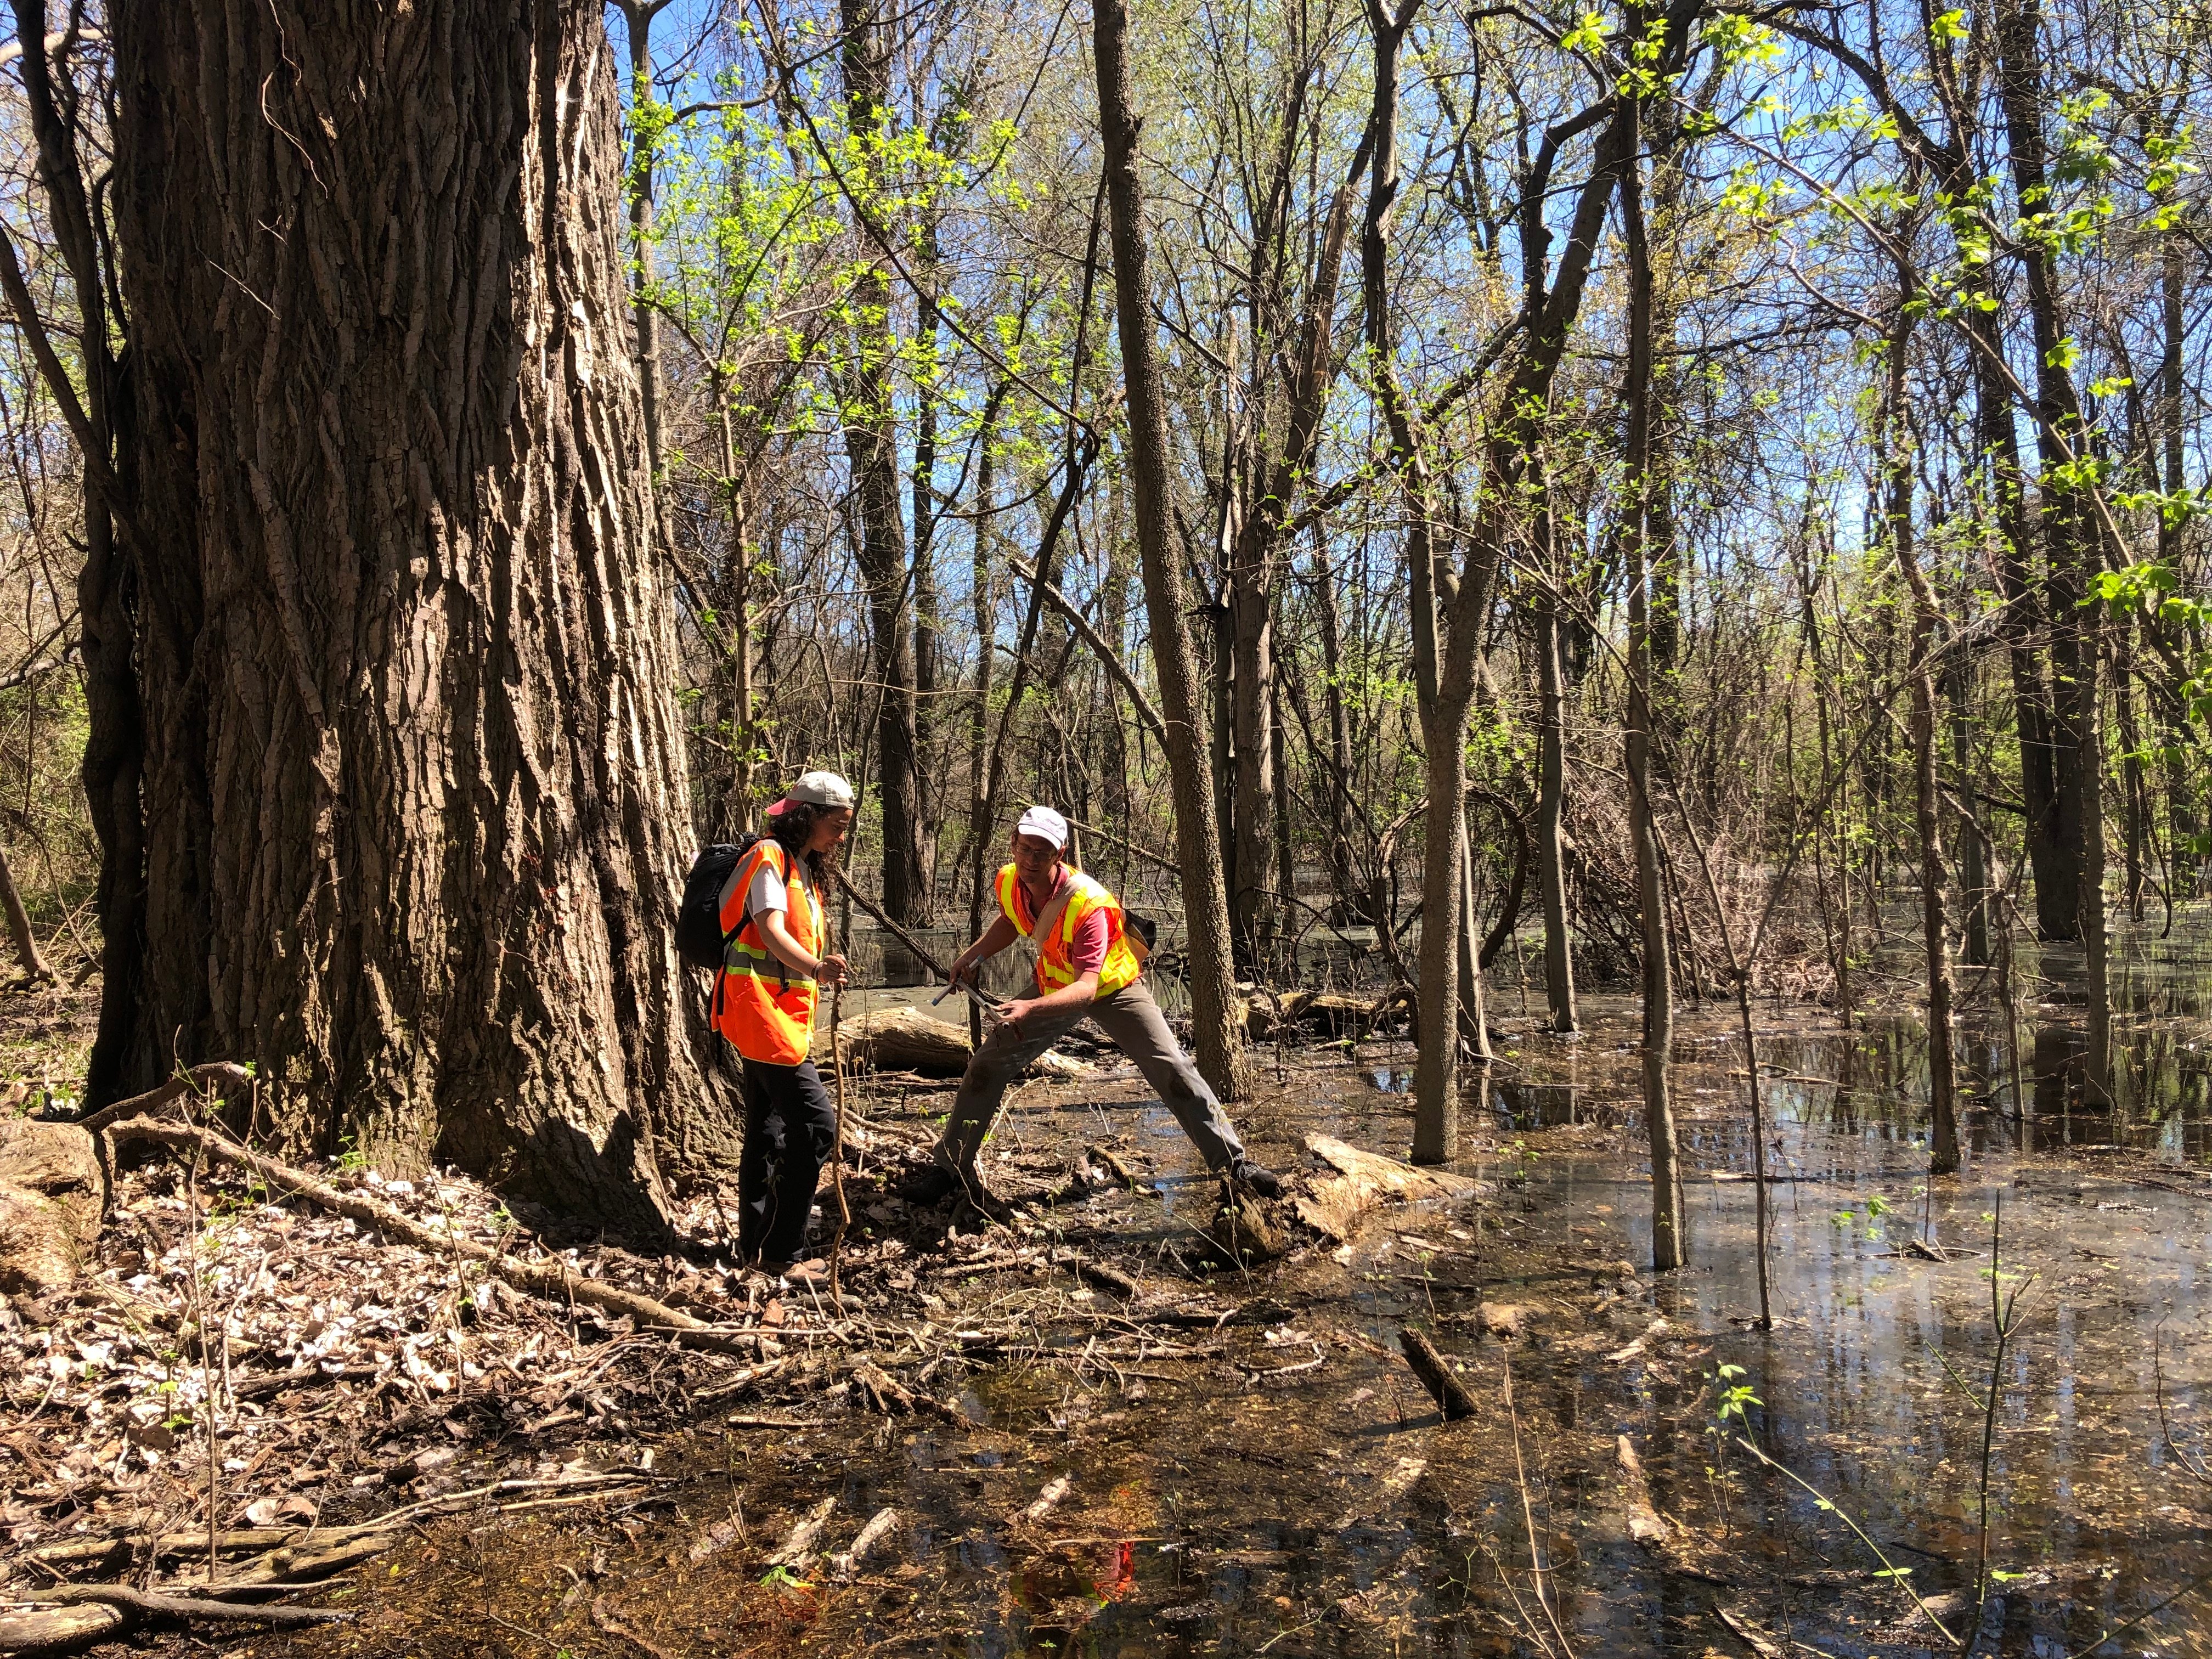 6 - Wetland Scientists at Work